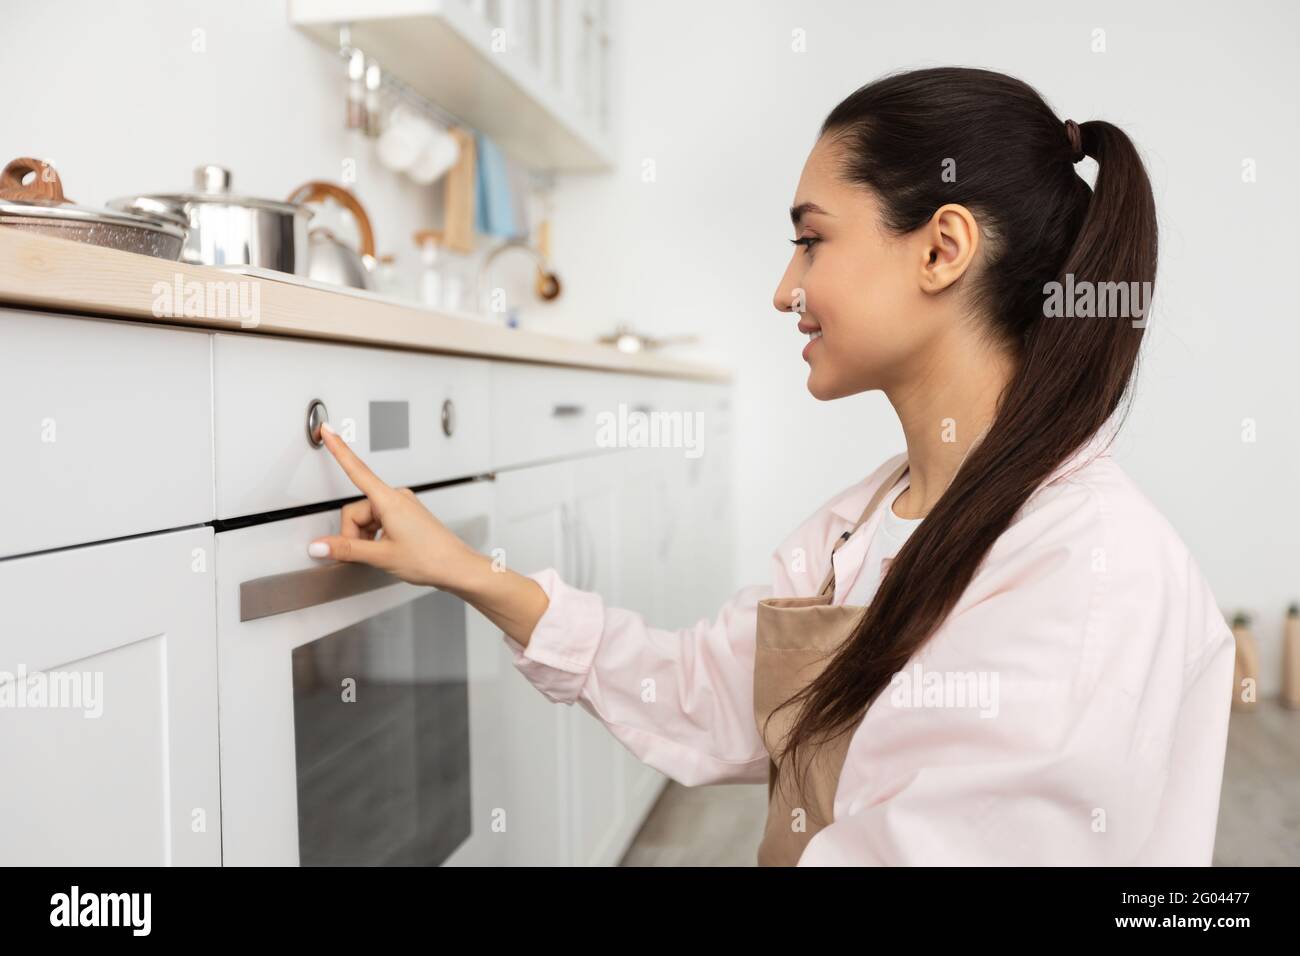 Mujer que usa cocina de cocina en la cocina Foto de stock